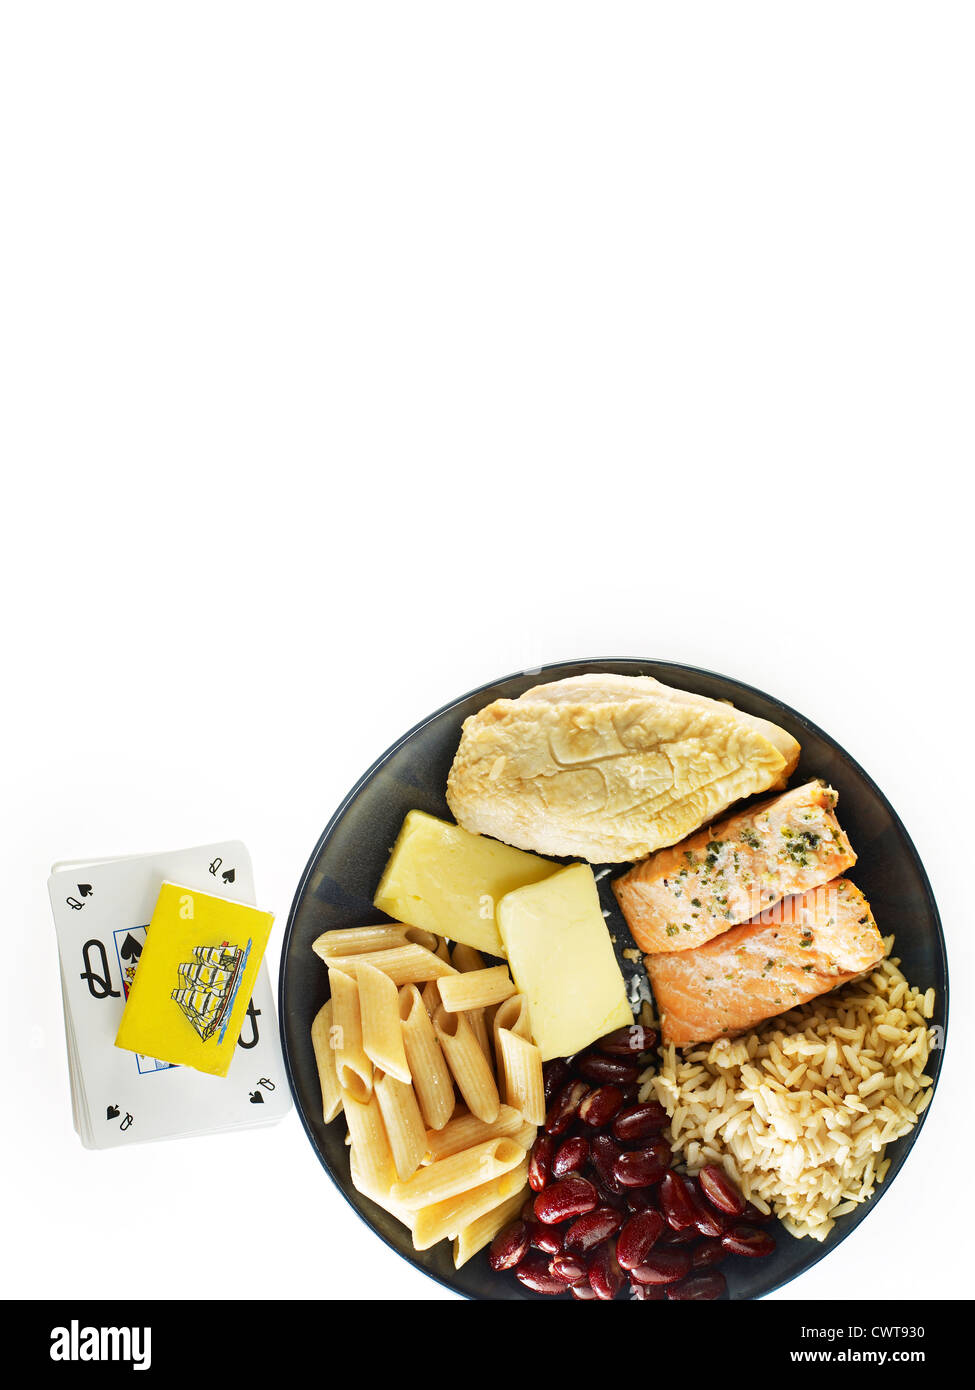 Plato de comida junto a los partidos y tarjetas Foto de stock